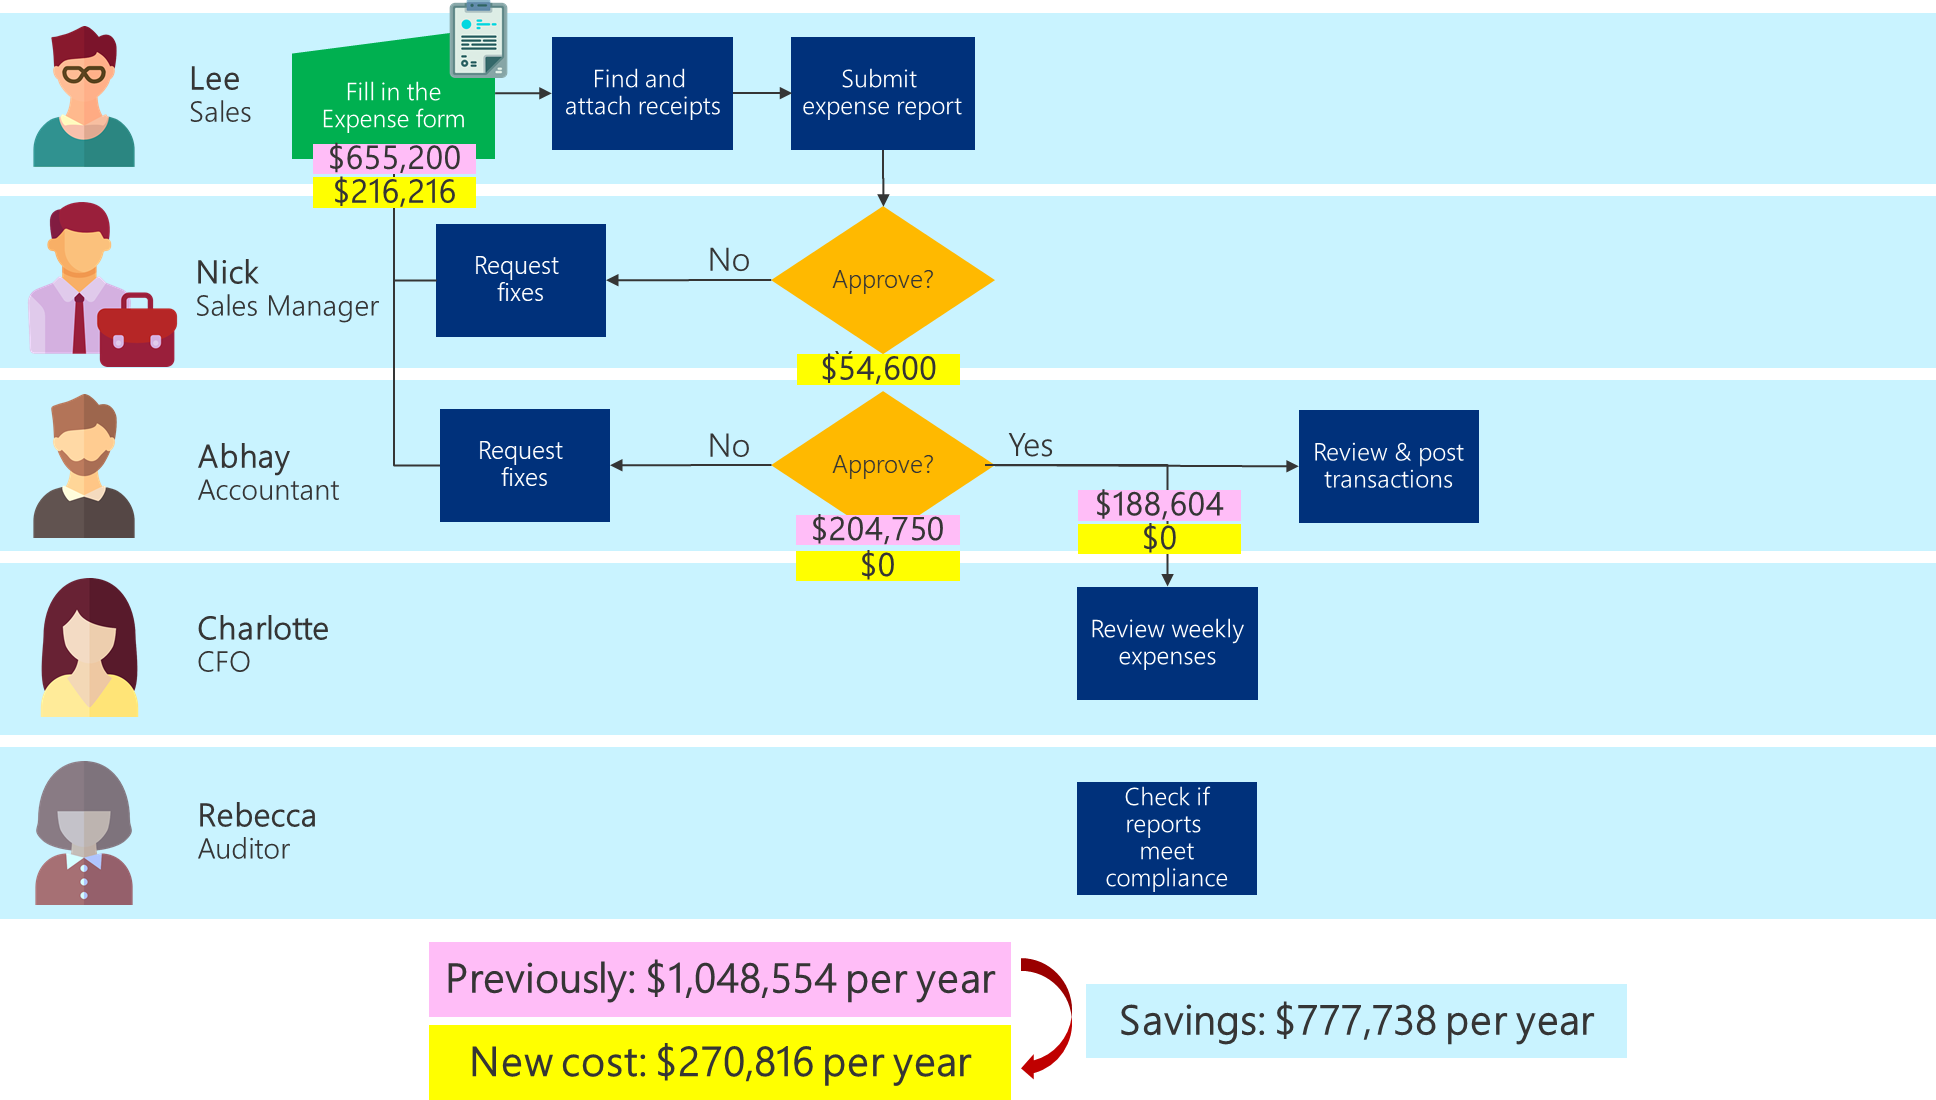 Stroomschema van bedrijfsprocessen met de bijgewerkte kosten voor het geoptimaliseerde proces en de totale te behalen besparingen.